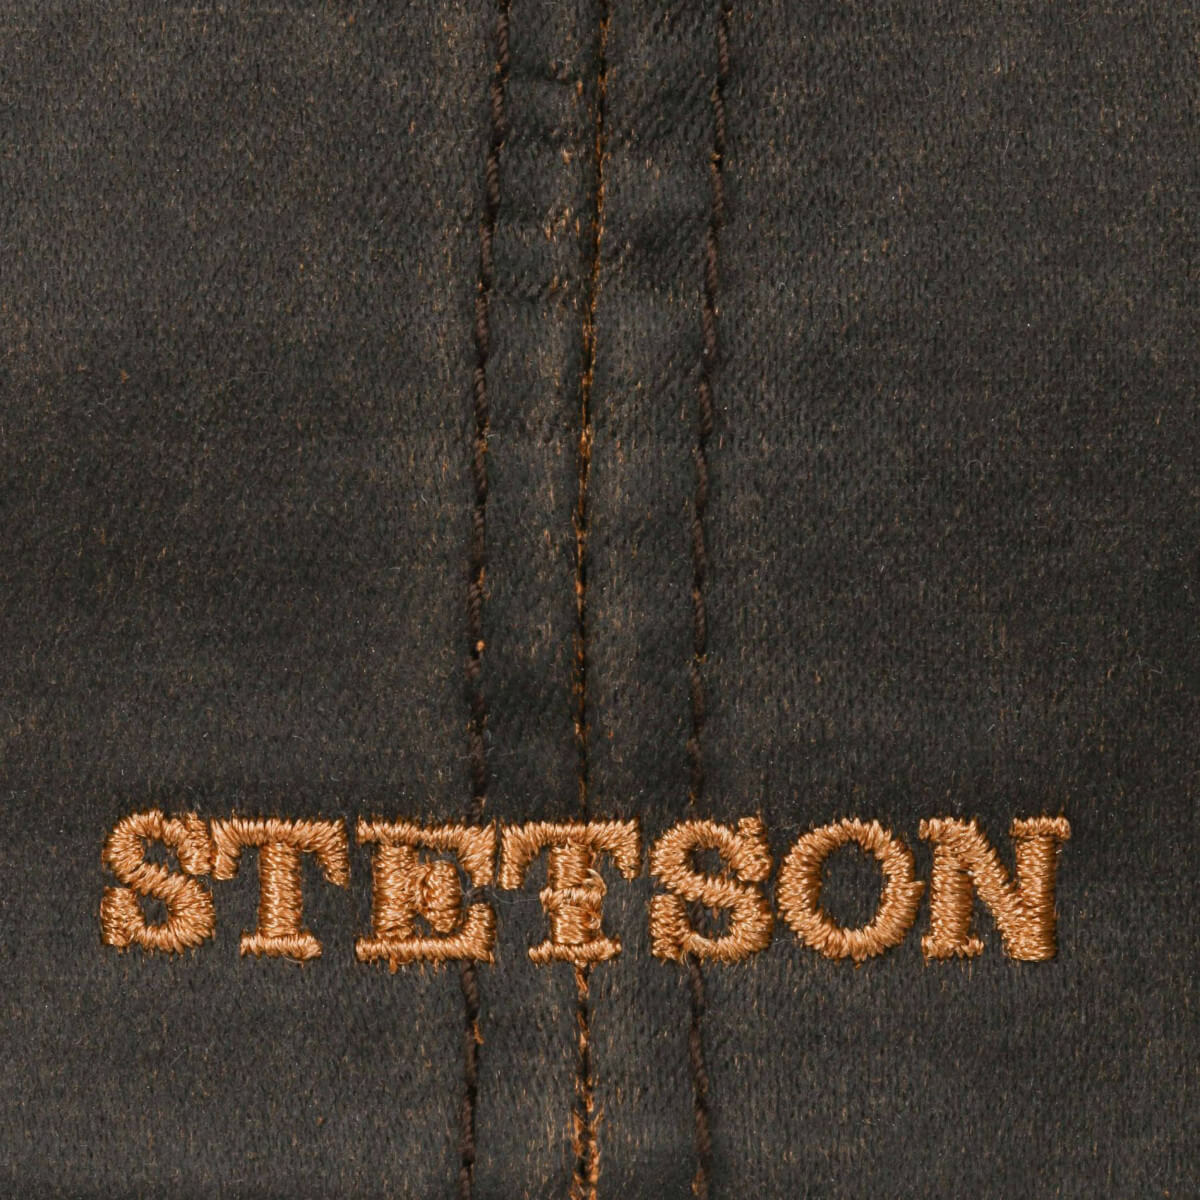 Stetson Hatteras Old Cotton Newsboy Cap Brown